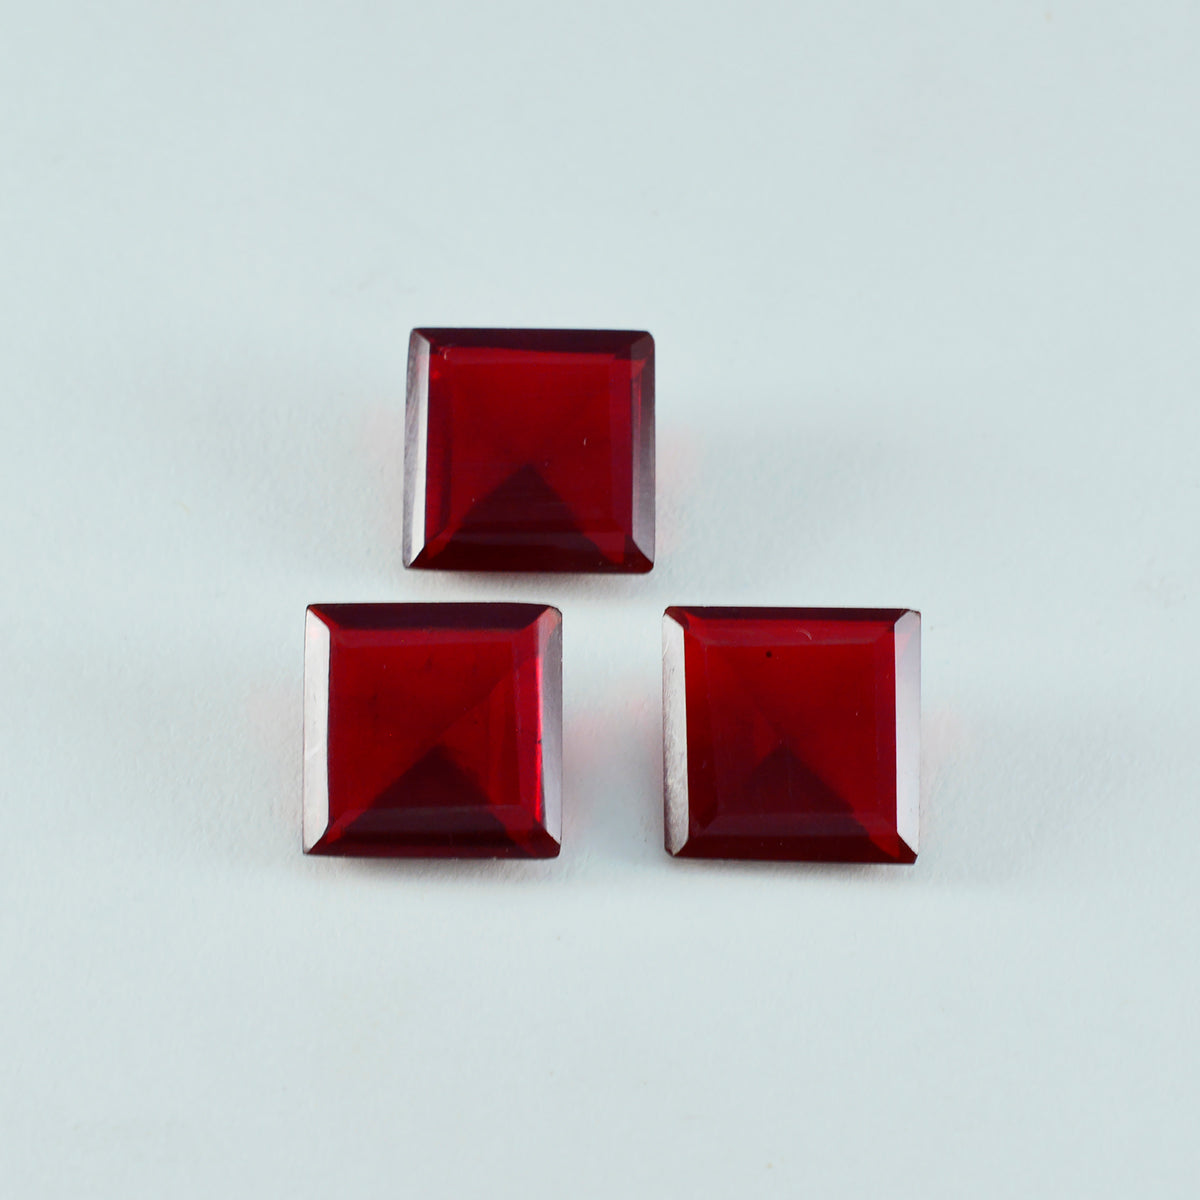 Riyogems 1PC Red Ruby CZ gefacetteerd 14x14 mm vierkante vorm verbazingwekkende kwaliteit edelstenen